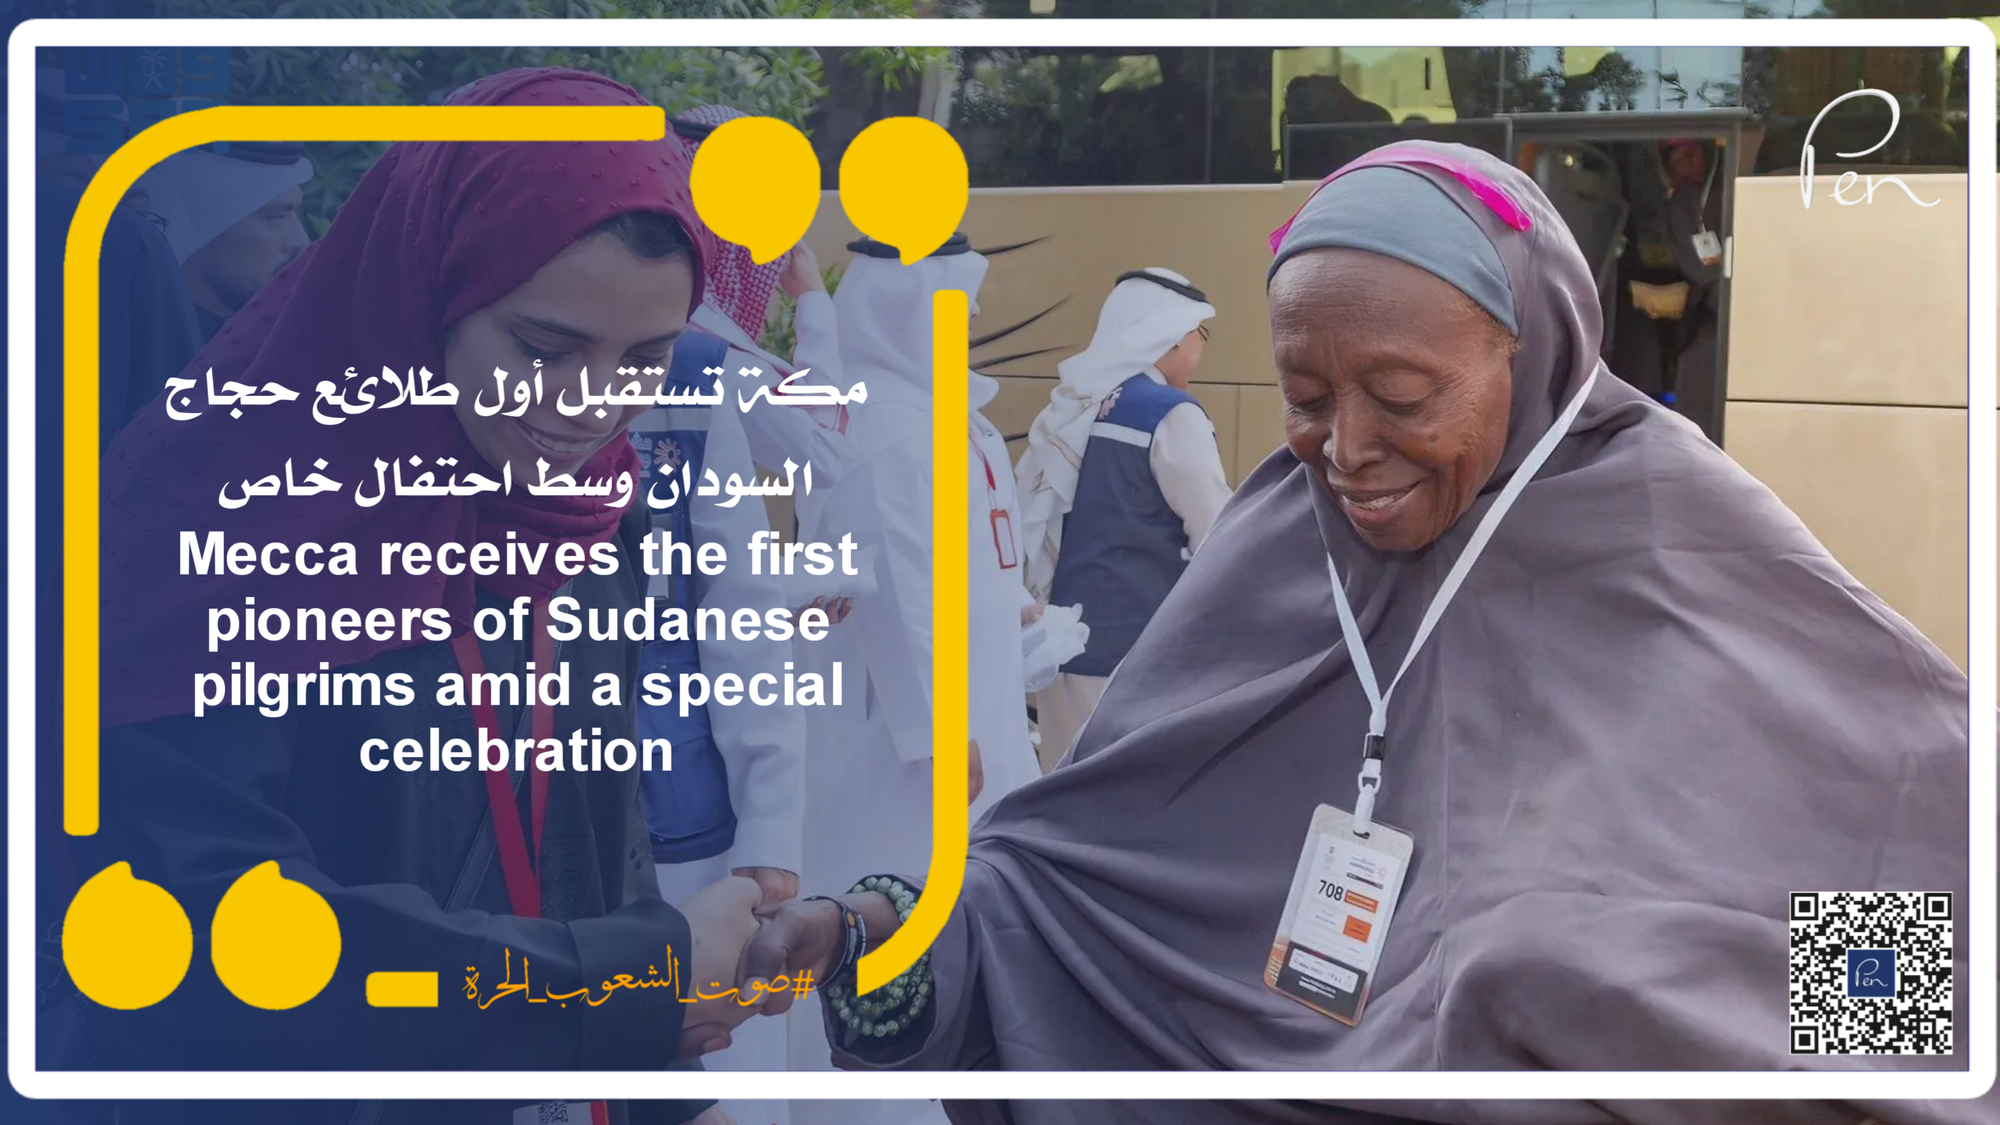 مكة تستقبل أول طلائع حجاج السودان وسط احتفال خاص